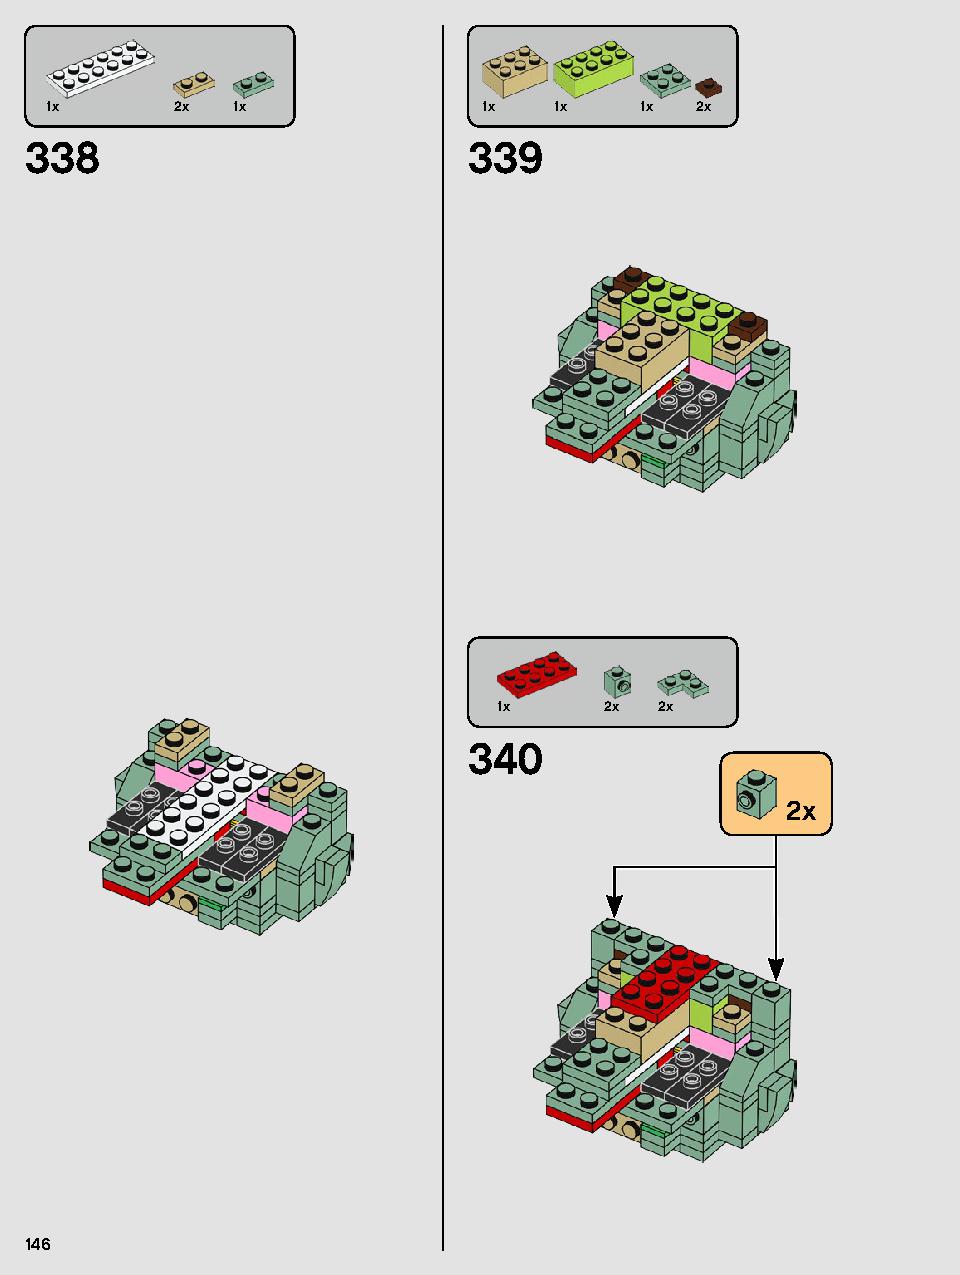 ヨーダ™ 75255 レゴの商品情報 レゴの説明書・組立方法 146 page